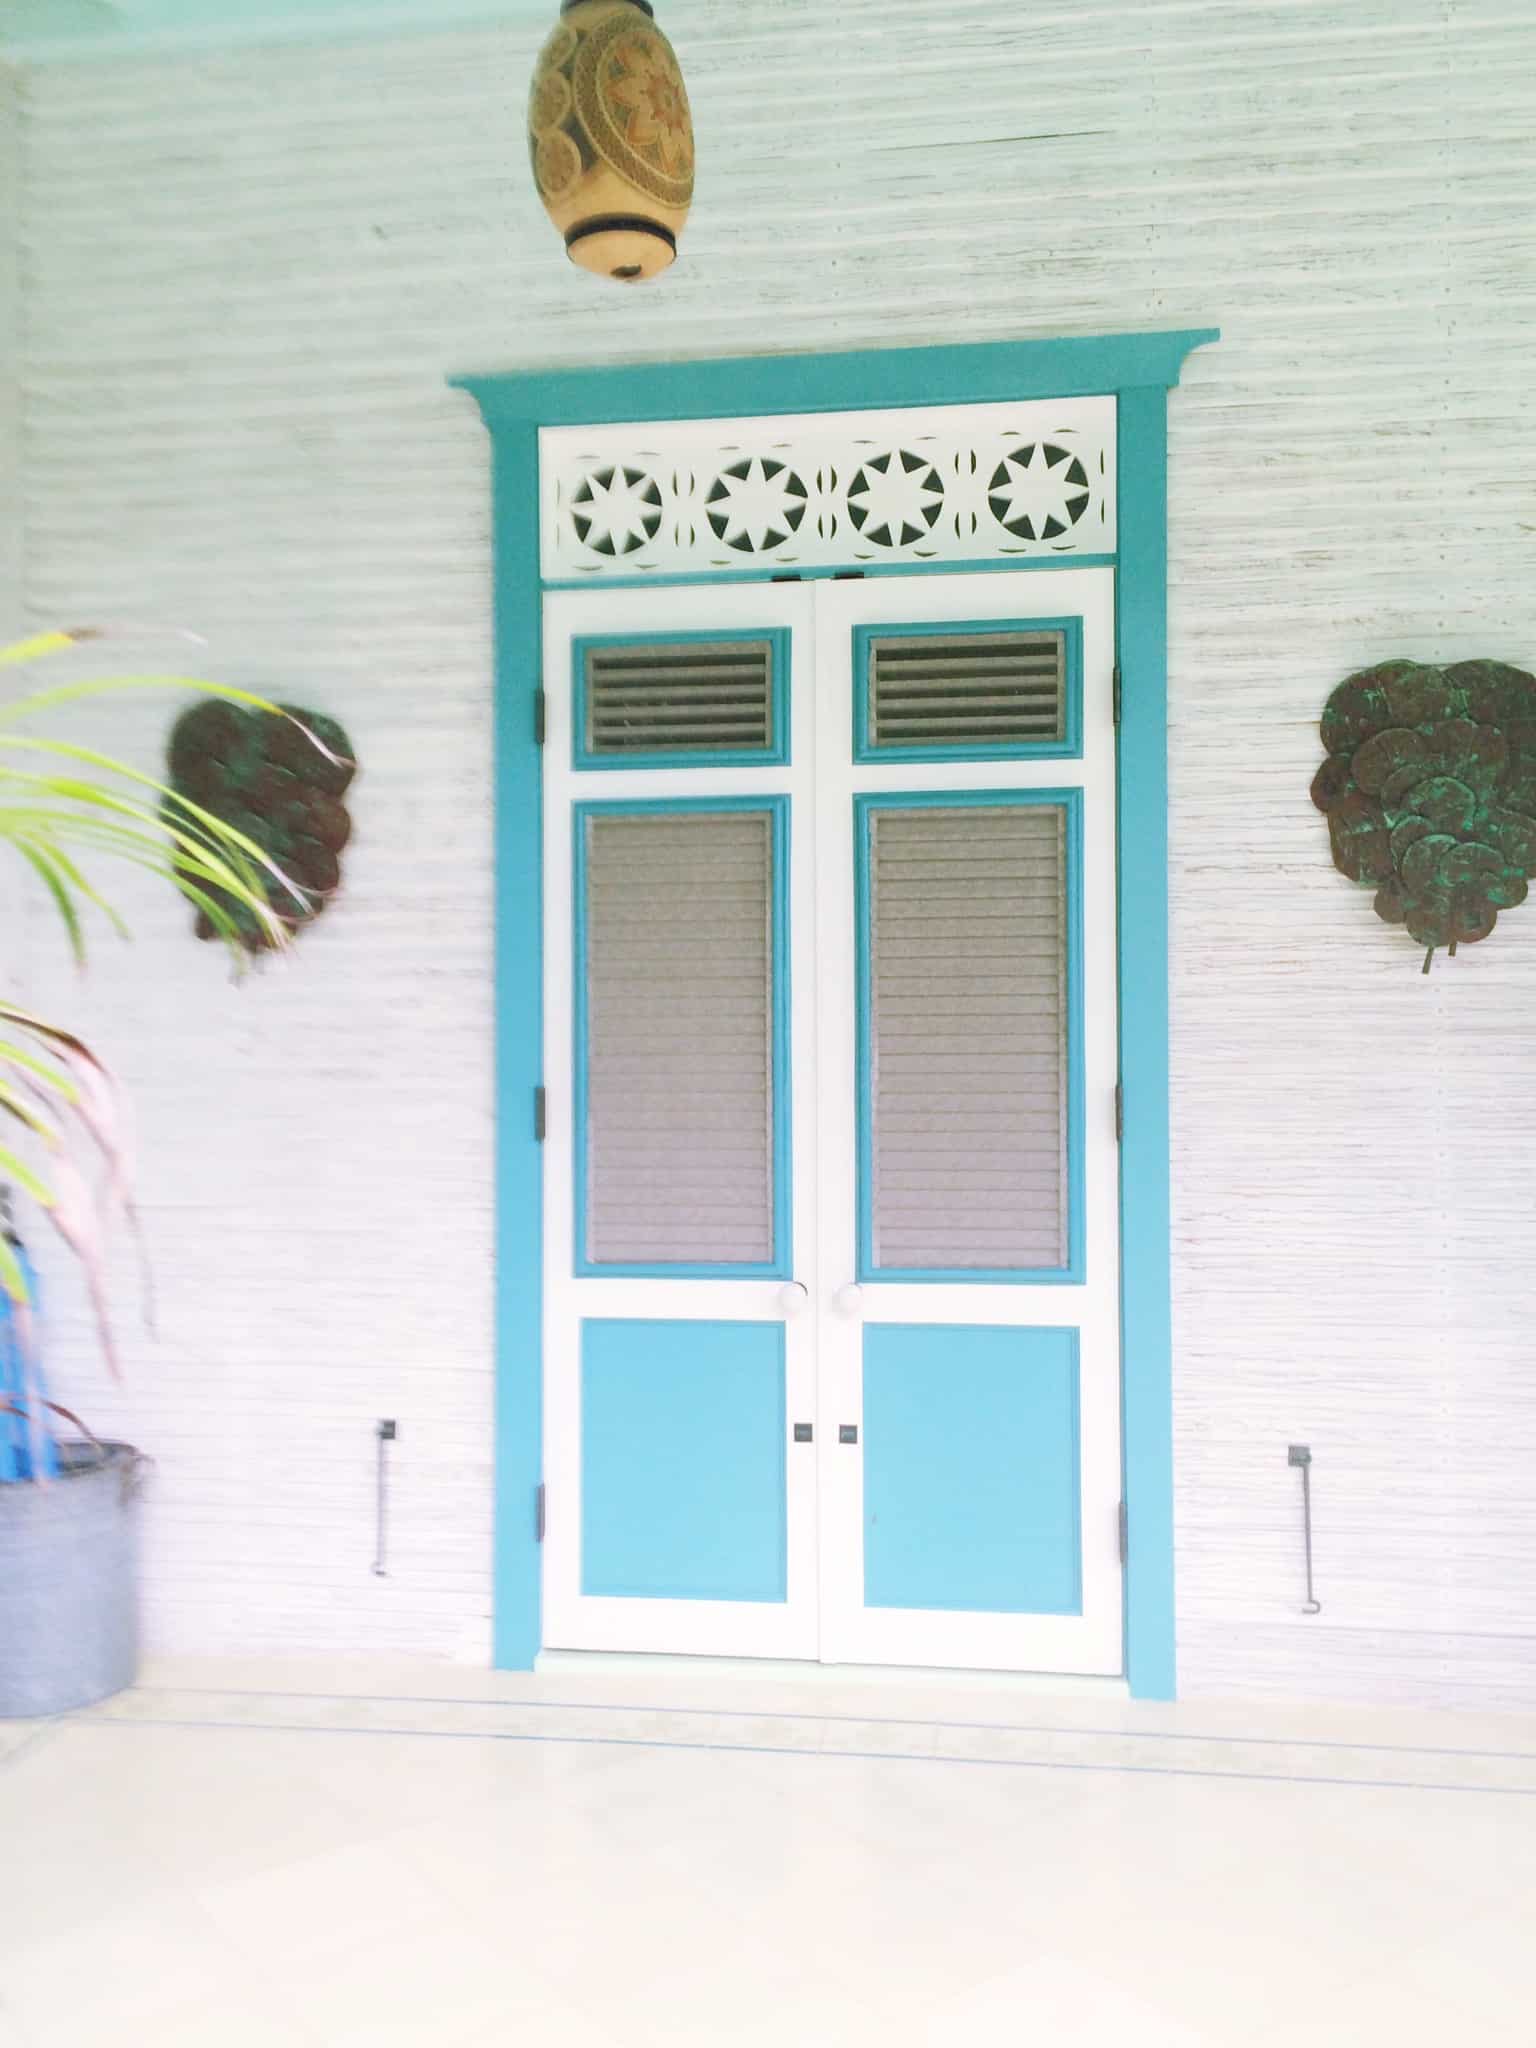 Turquoise blue shutter doors